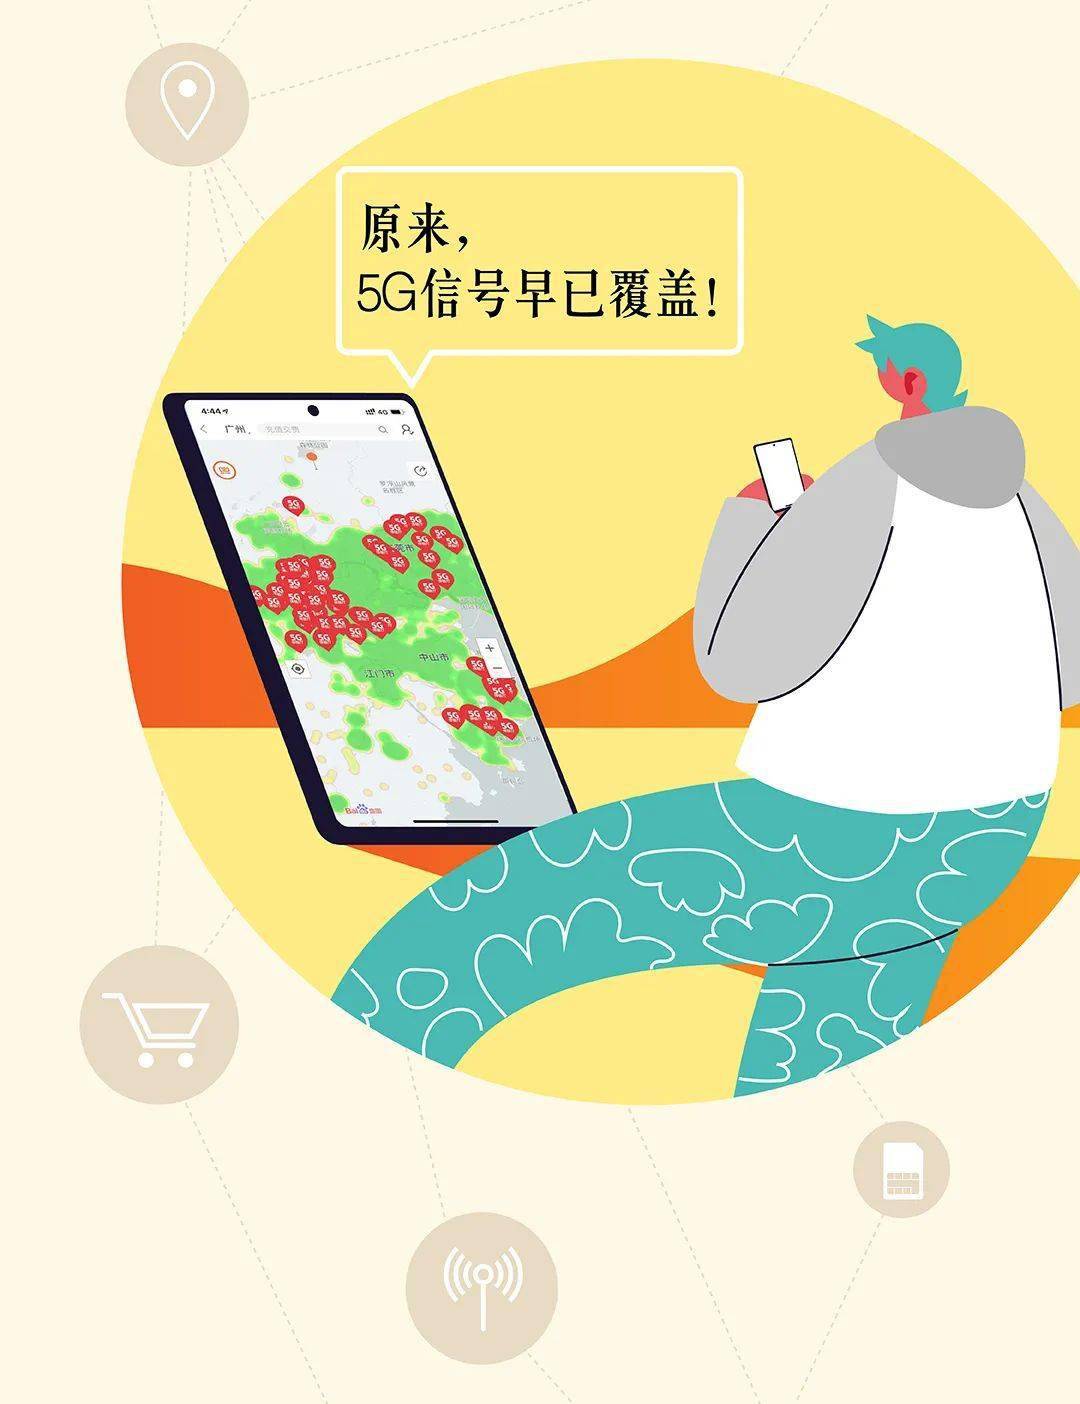 芷江县5G网络即将到来，改变生活方式，提升工作效率  第6张